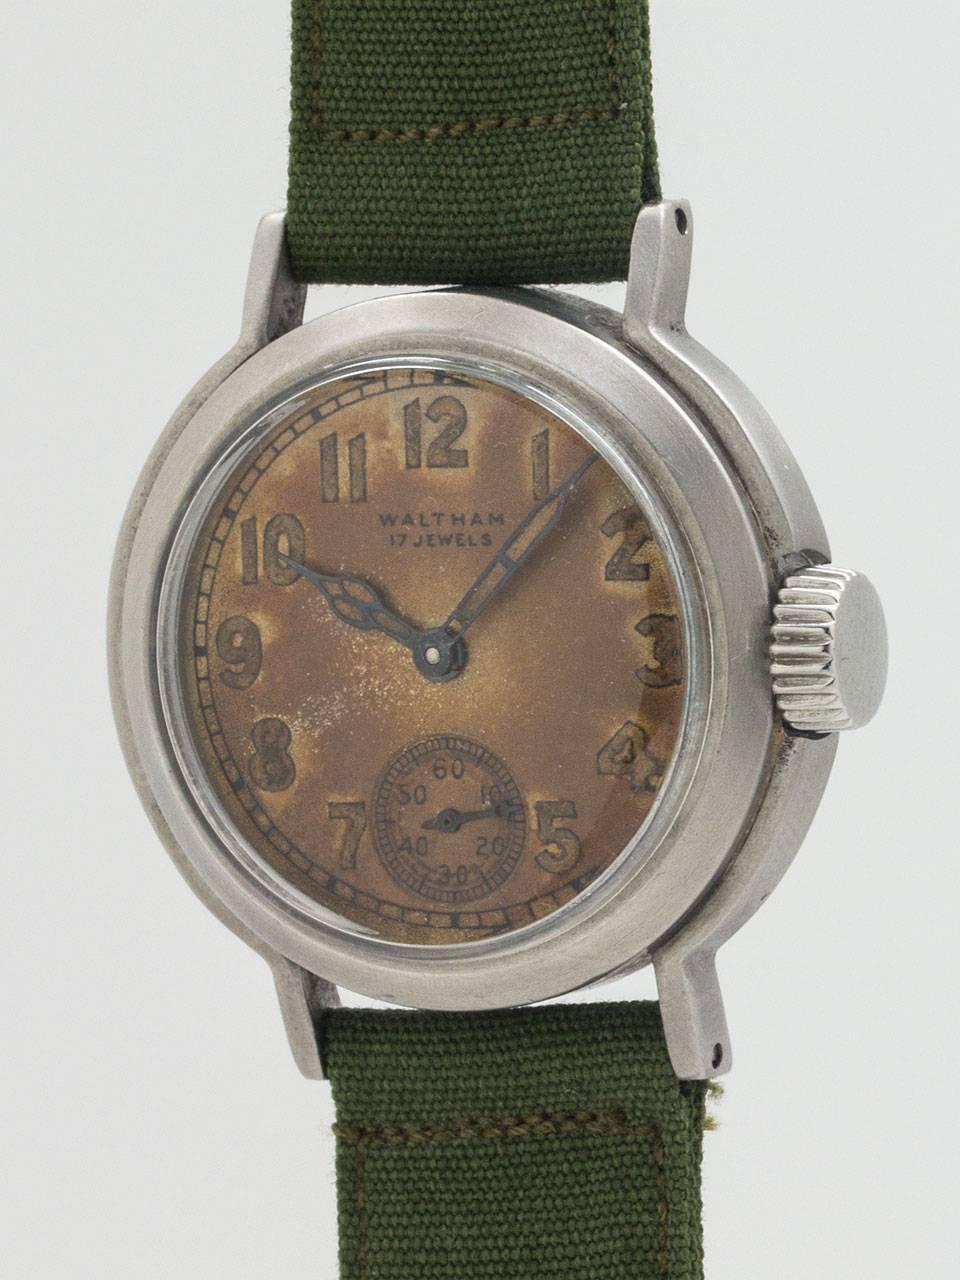 waltham premier wrist watch